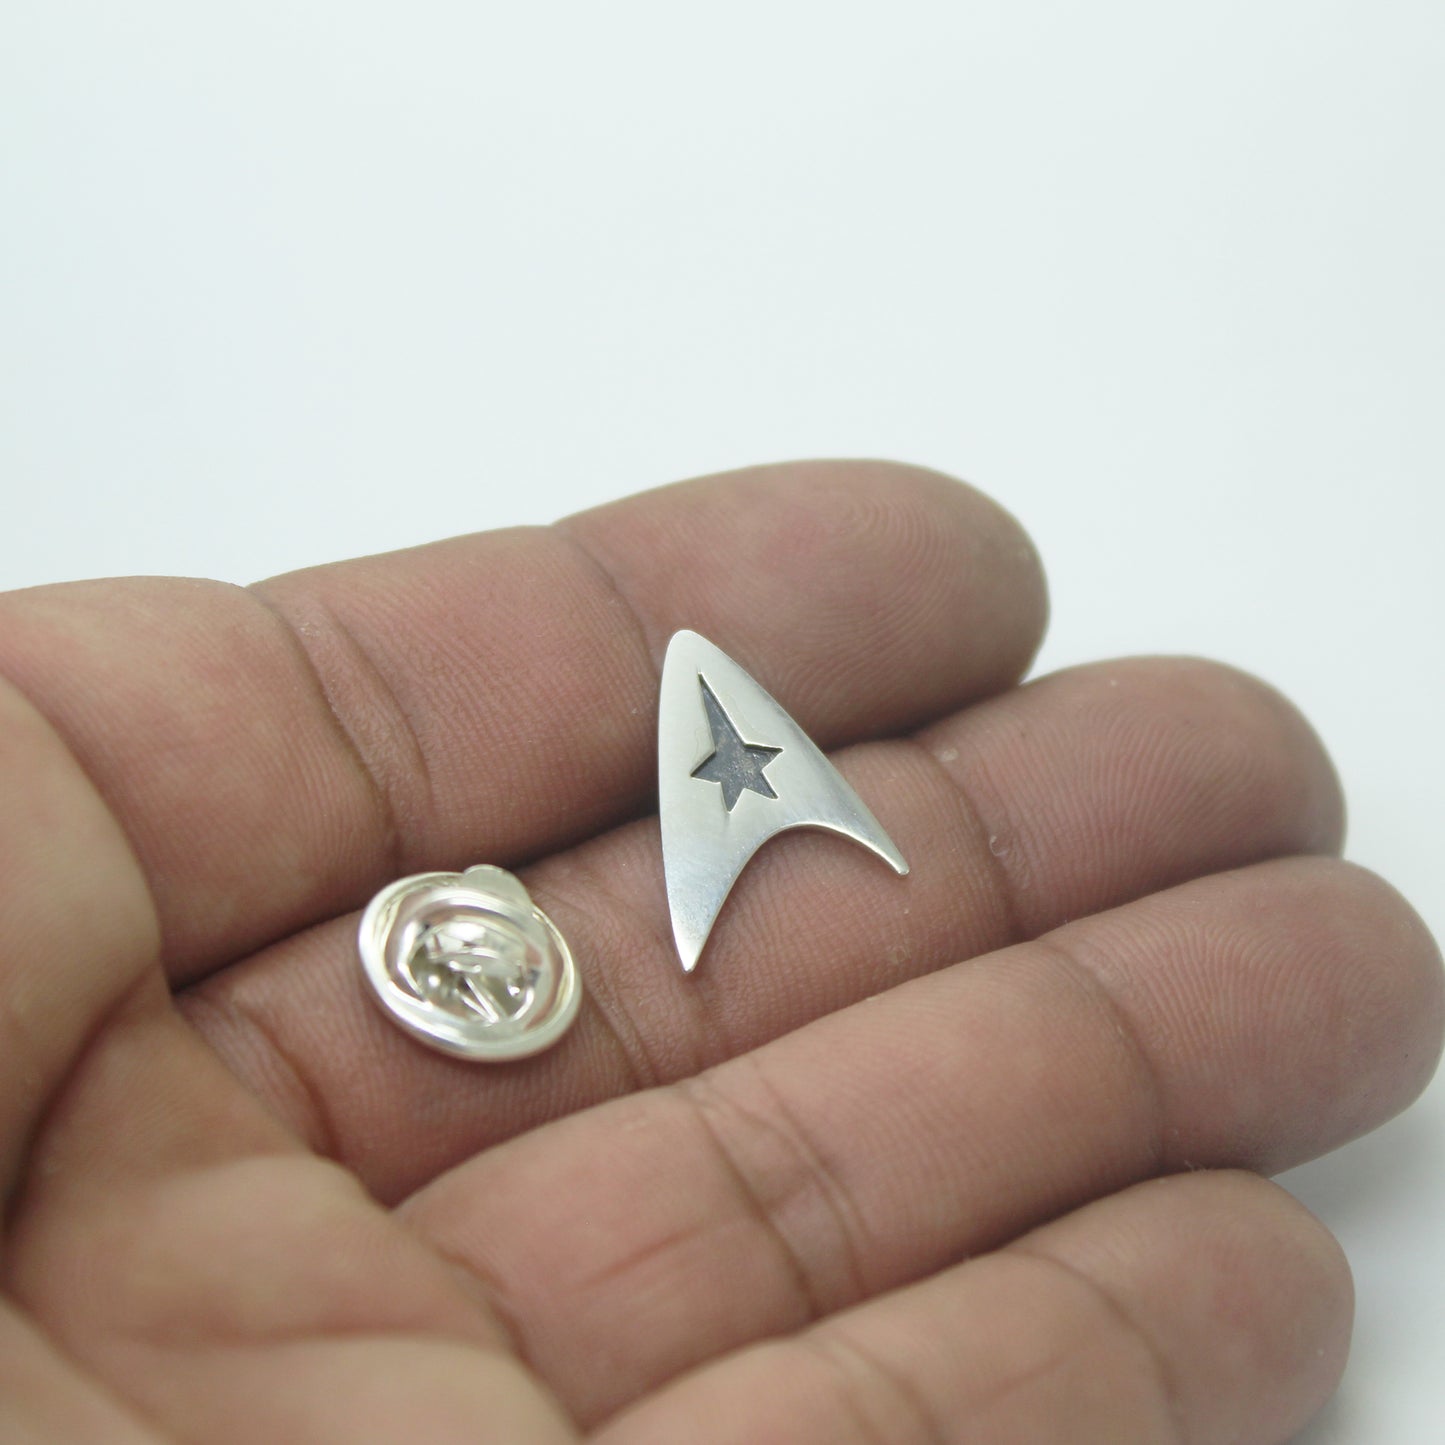 Star Trek Insignia Delta de la Flota Estelar pin en plata 925